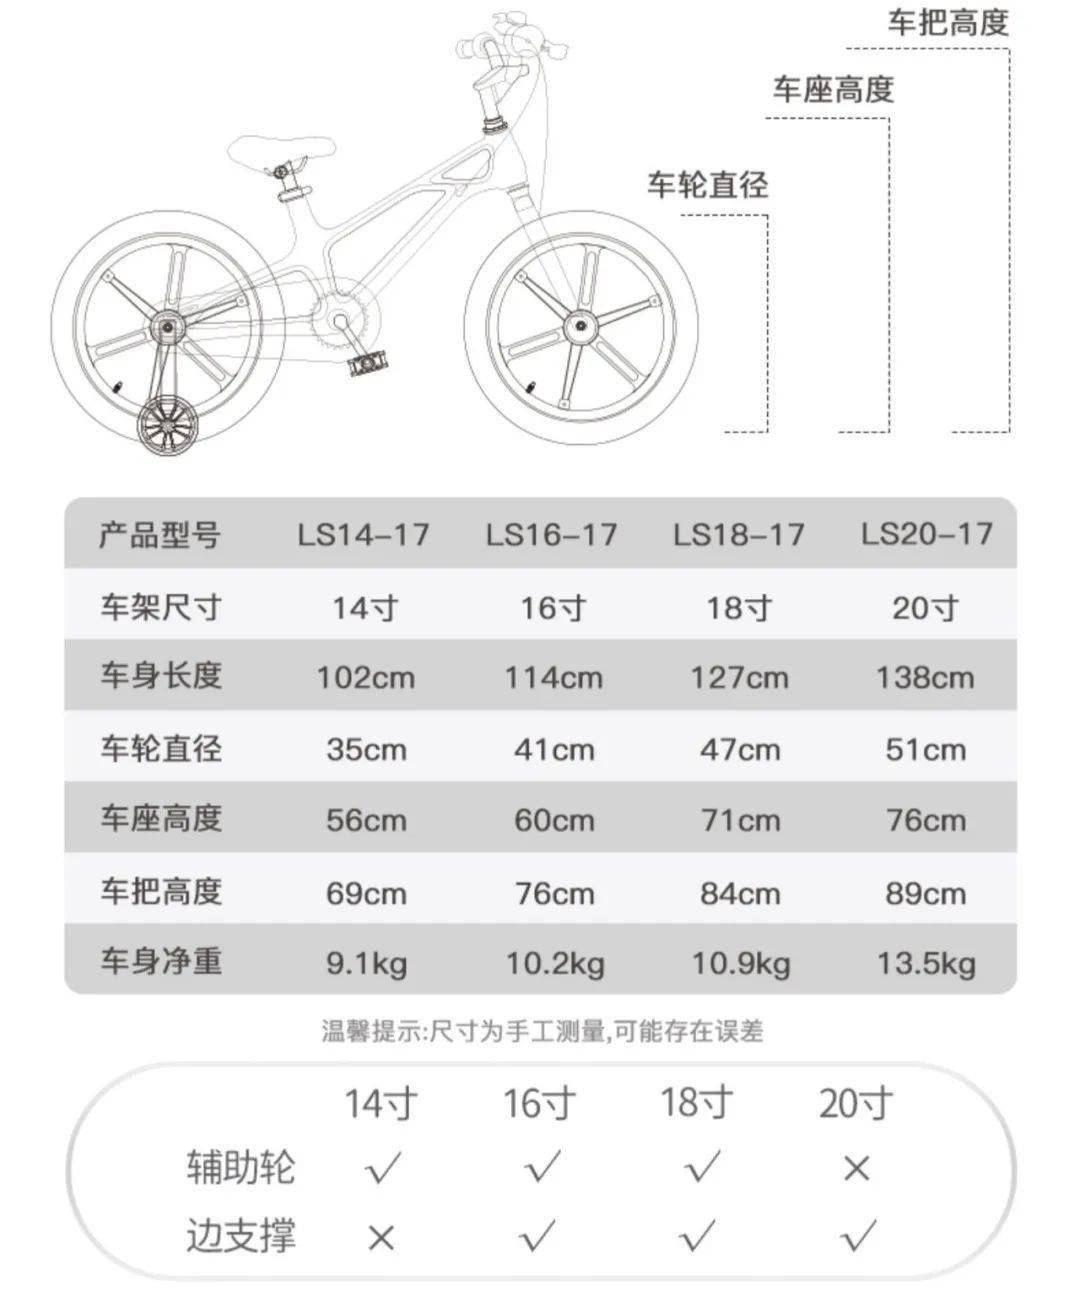 儿童自行车尺寸对照表图片